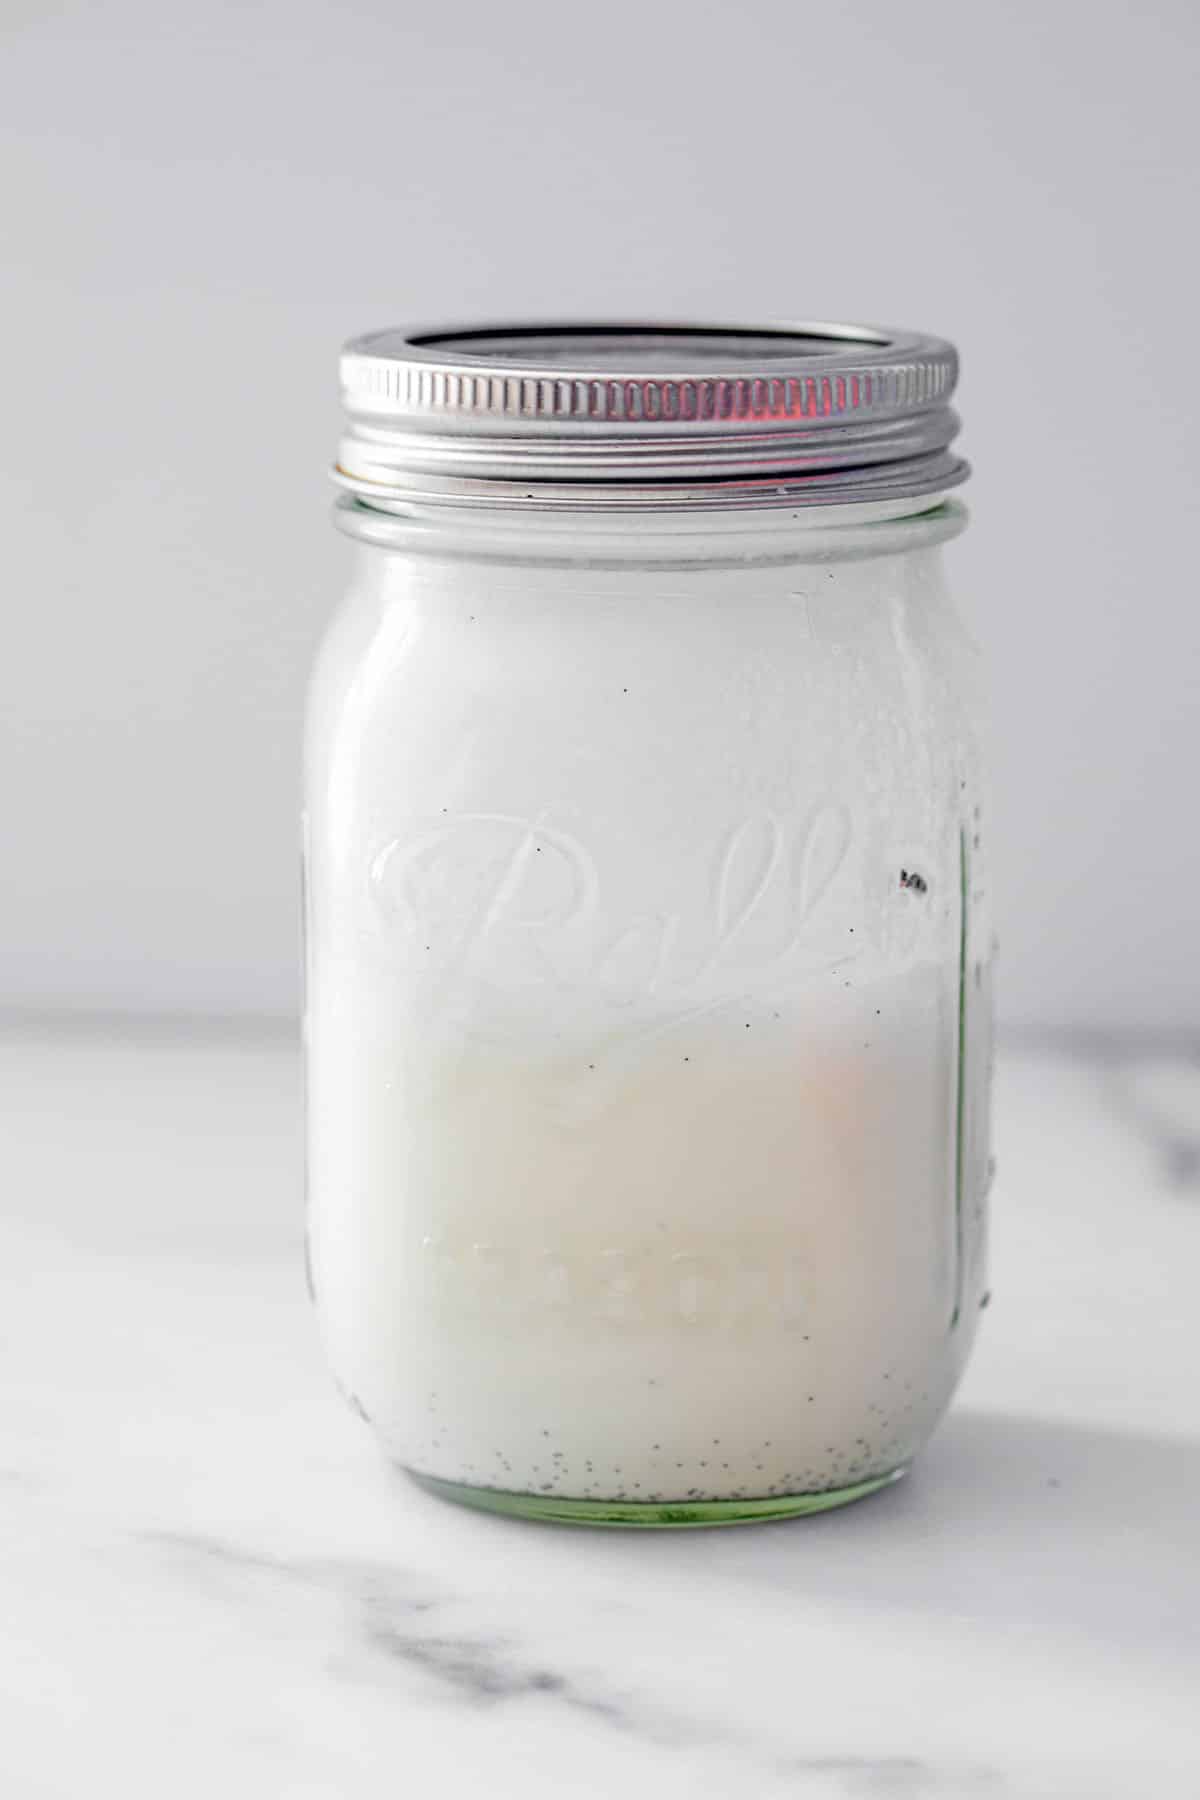 Sweet Cream Foamed Milk